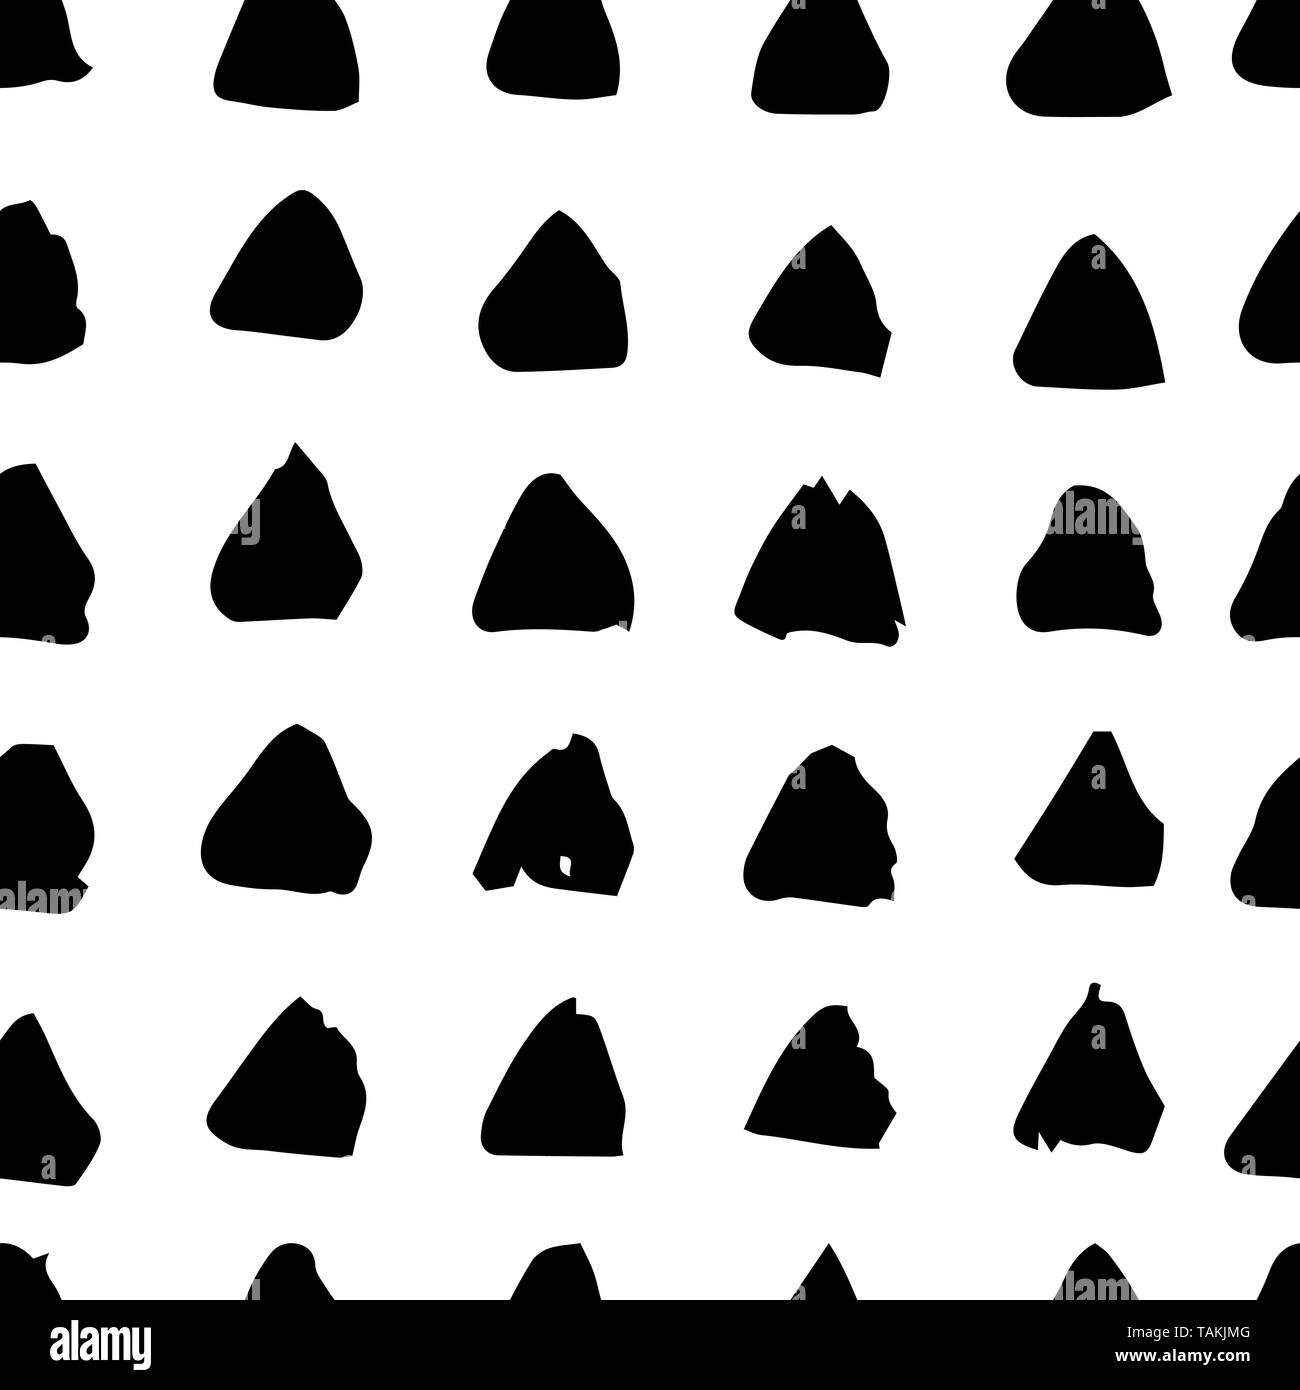 Vektor nahtlose Hand zeichnen Dreiecke Bürste schwarz-weißen Muster. Monochrome skandinavischen Hintergründe der einfachen Primitiven mit Punkten für textile Desig Stock Vektor